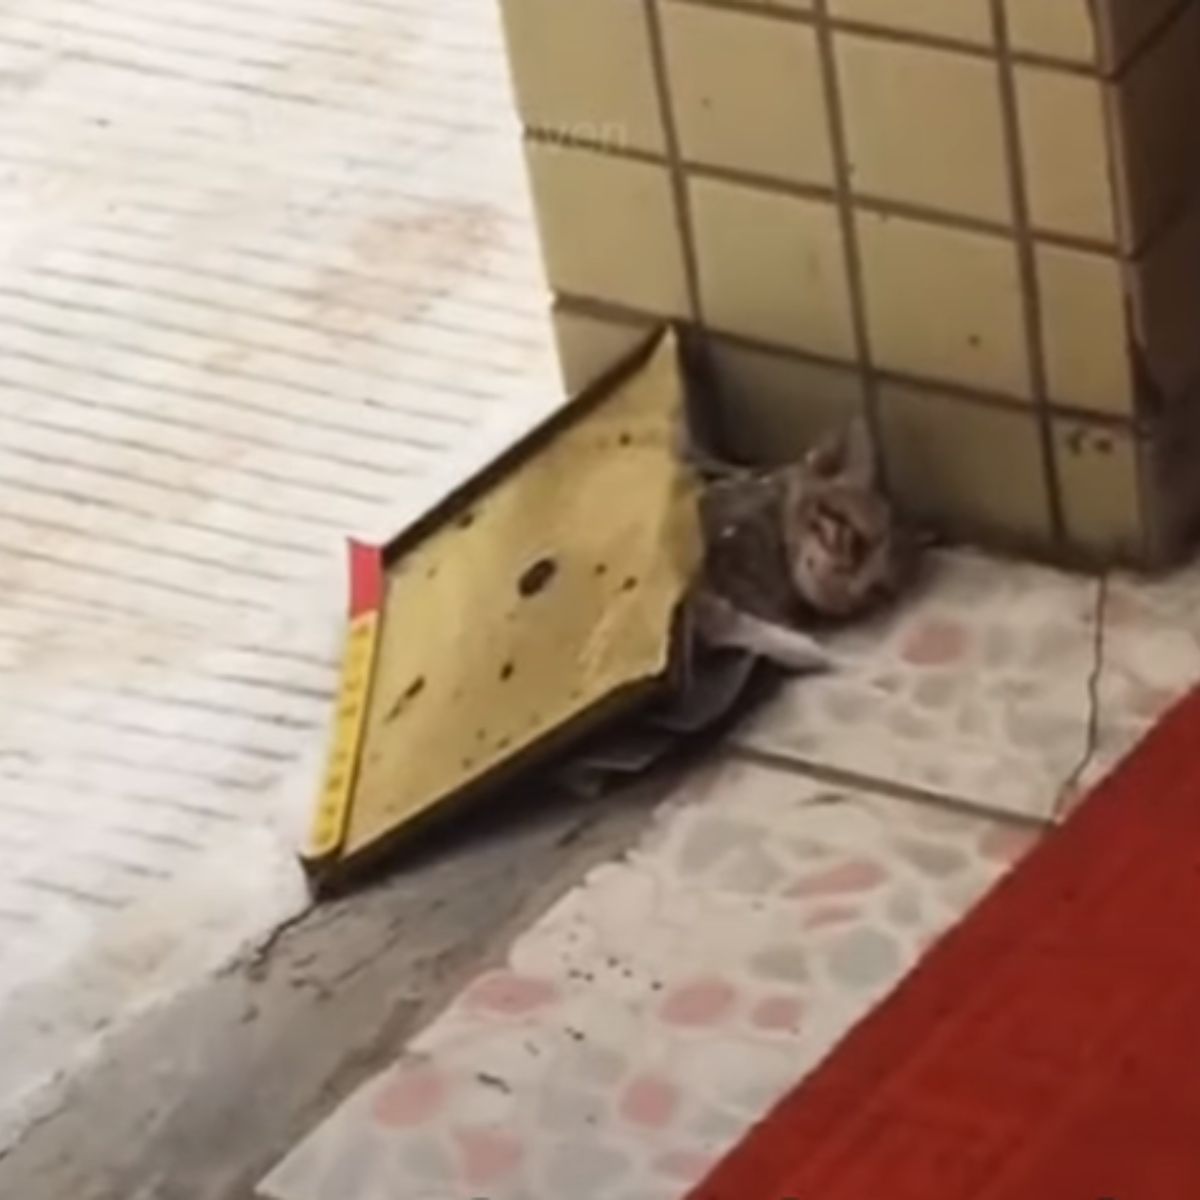 kitten stuck in glue trap